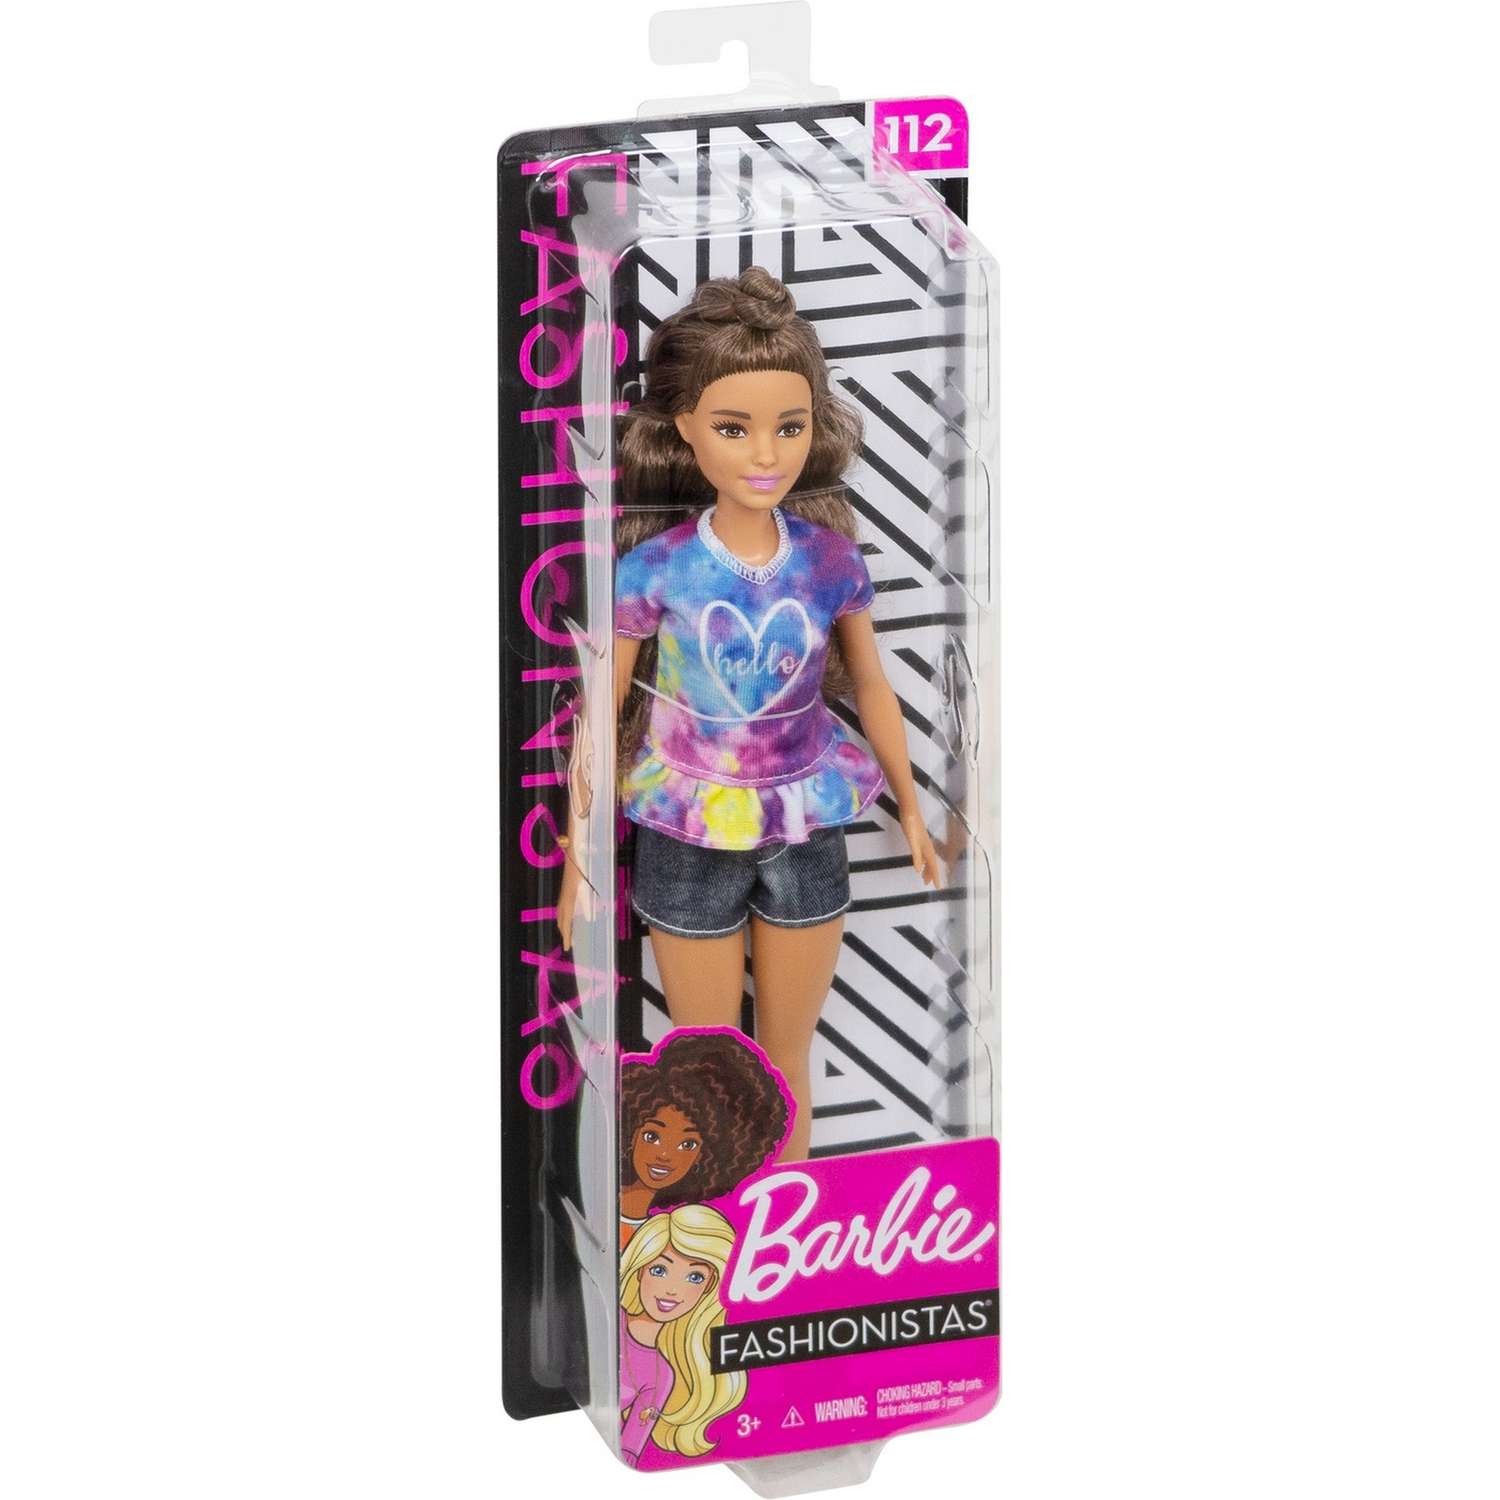 Кукла Barbie Игра с модой 112 FYB31 FBR37 - фото 3